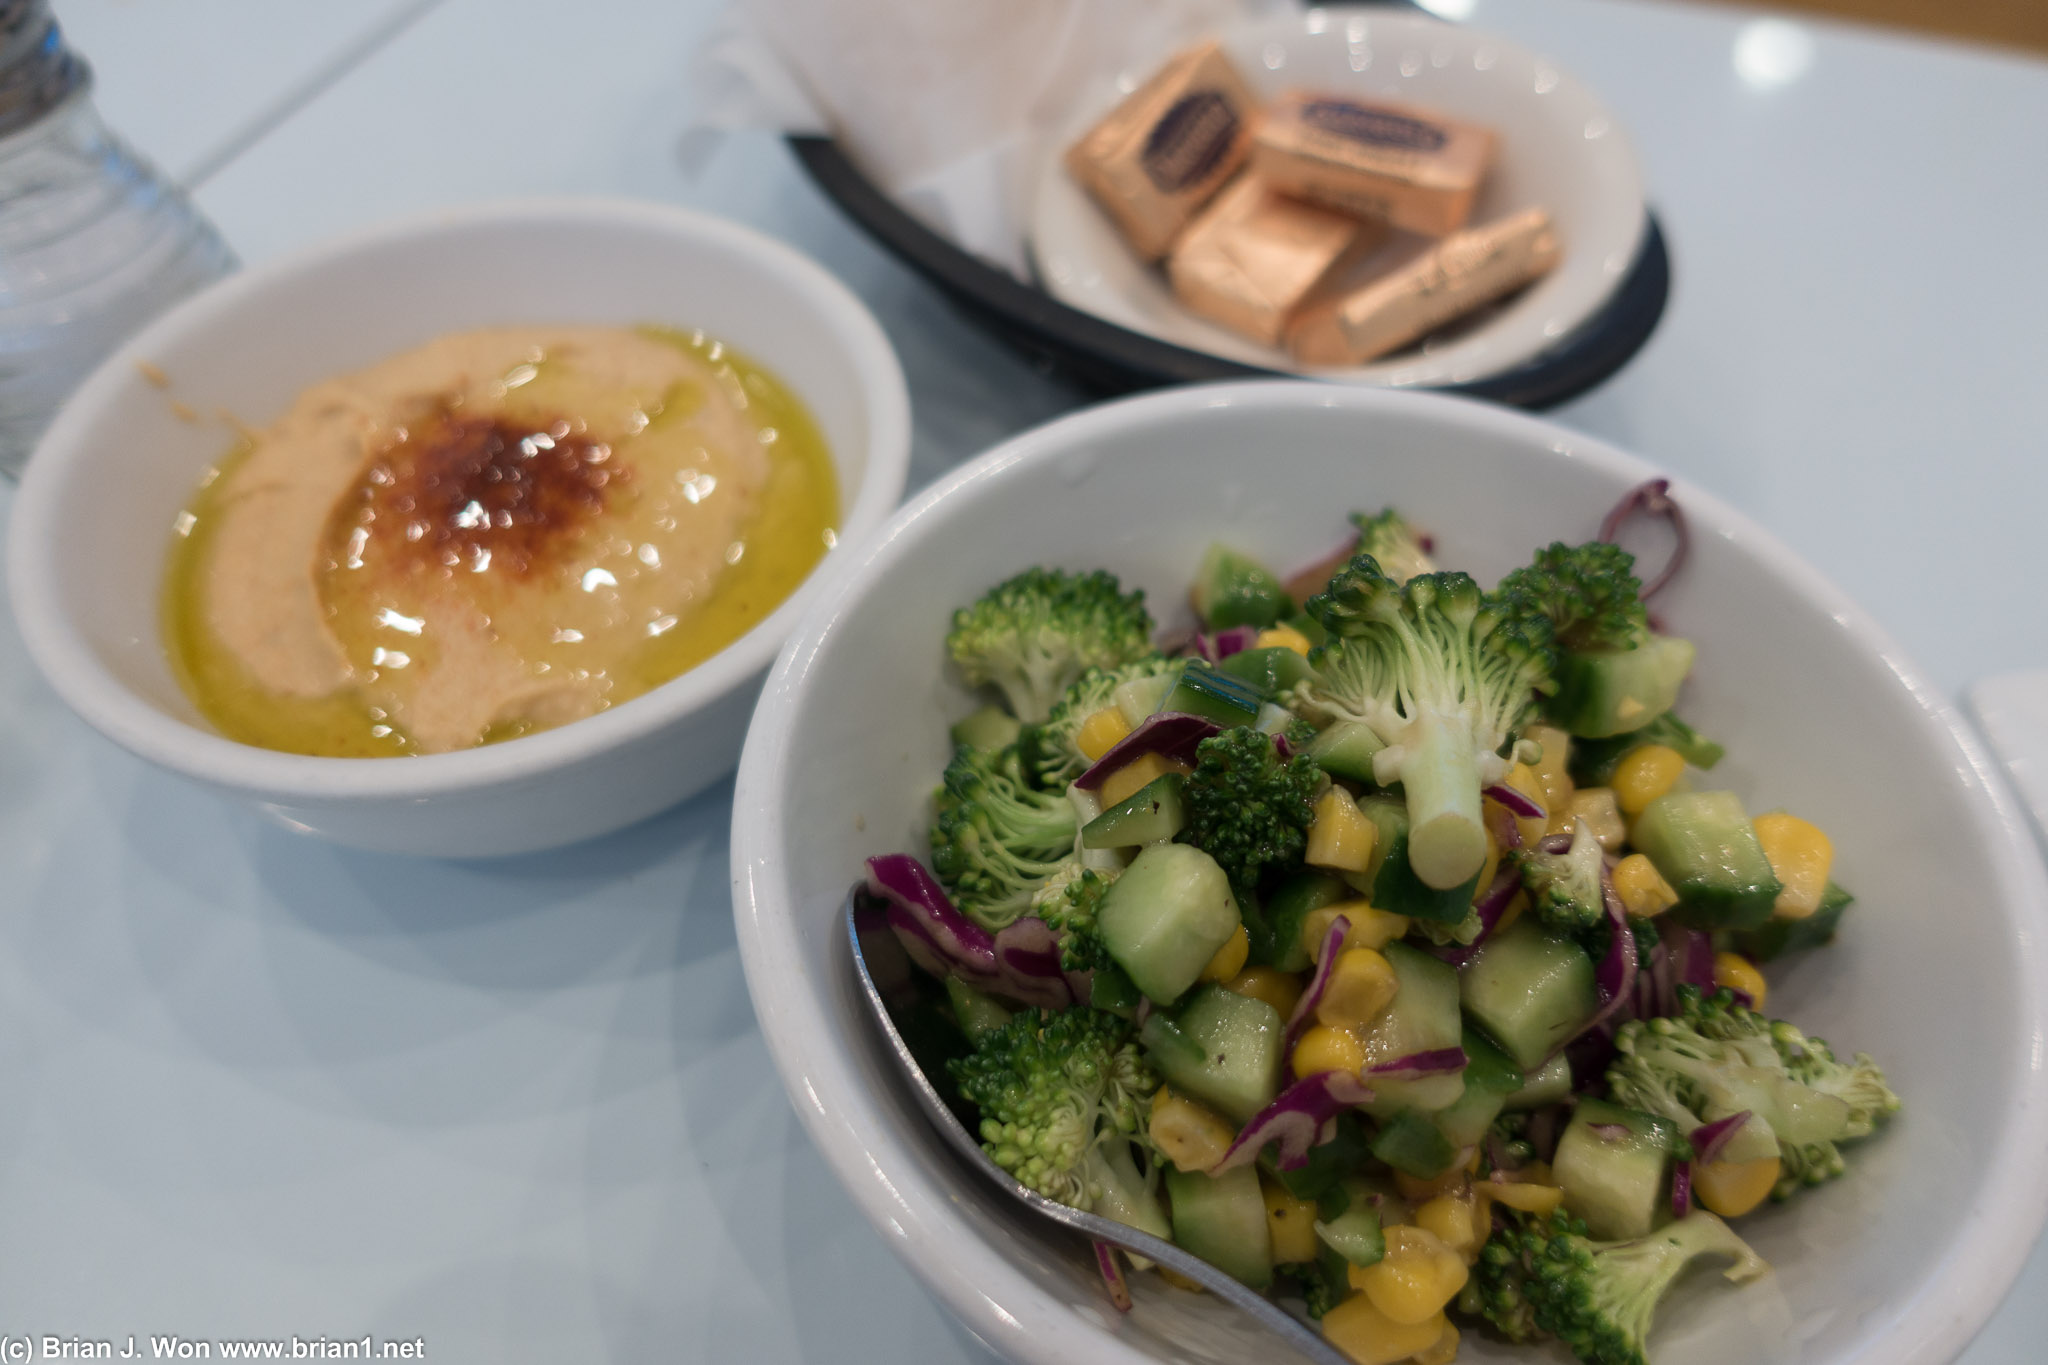 Broccoli salad and hummus. All house-made.